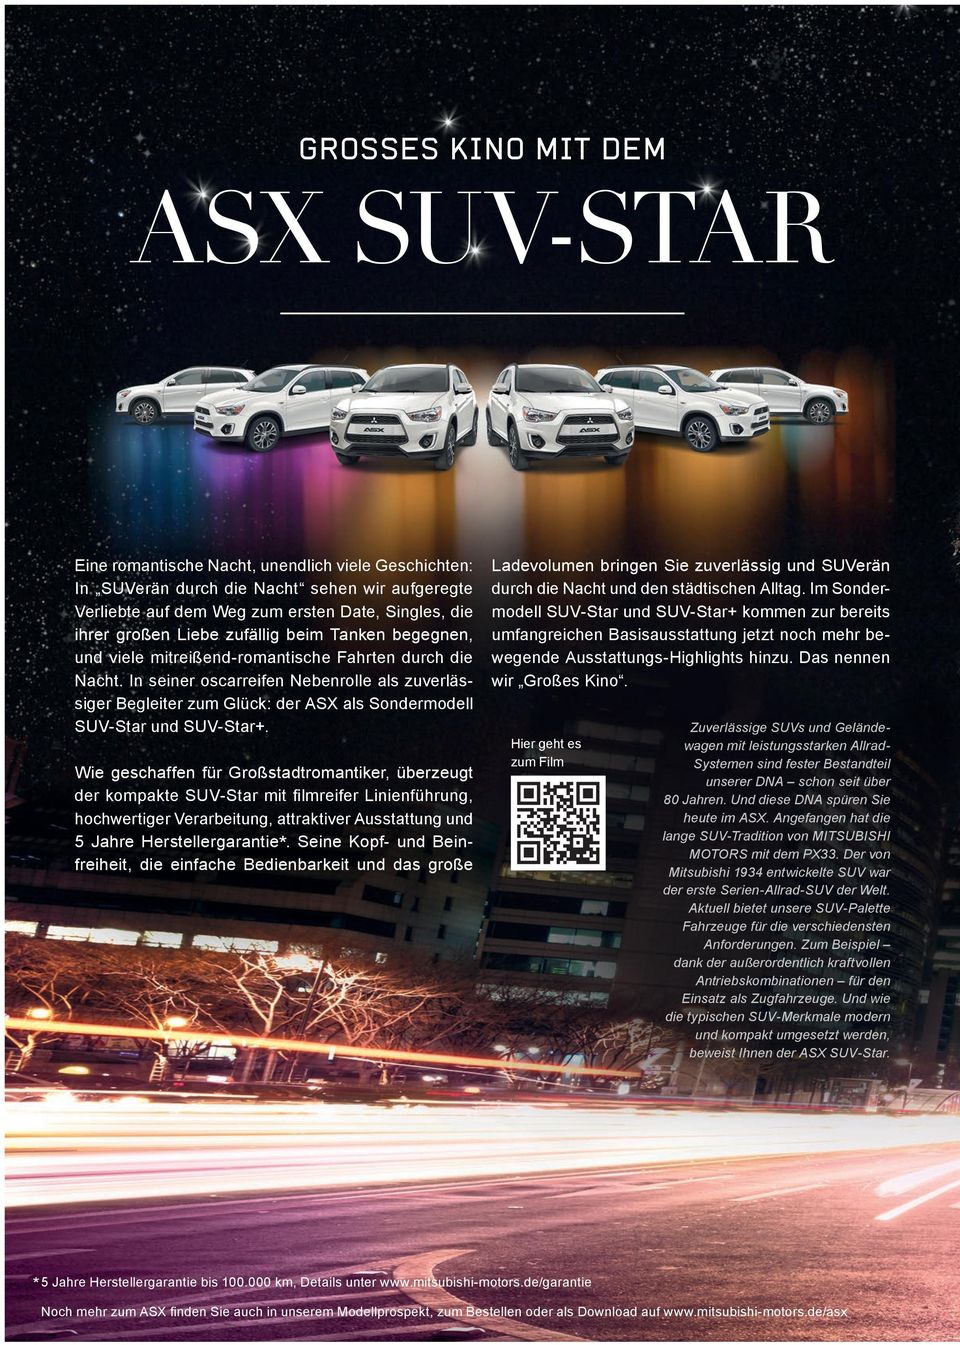 In seiner oscarreifen Nebenrolle als zuverlässiger Begleiter zum Glück: der ASX als Sondermodell SUV-Star und SUV-Star+.